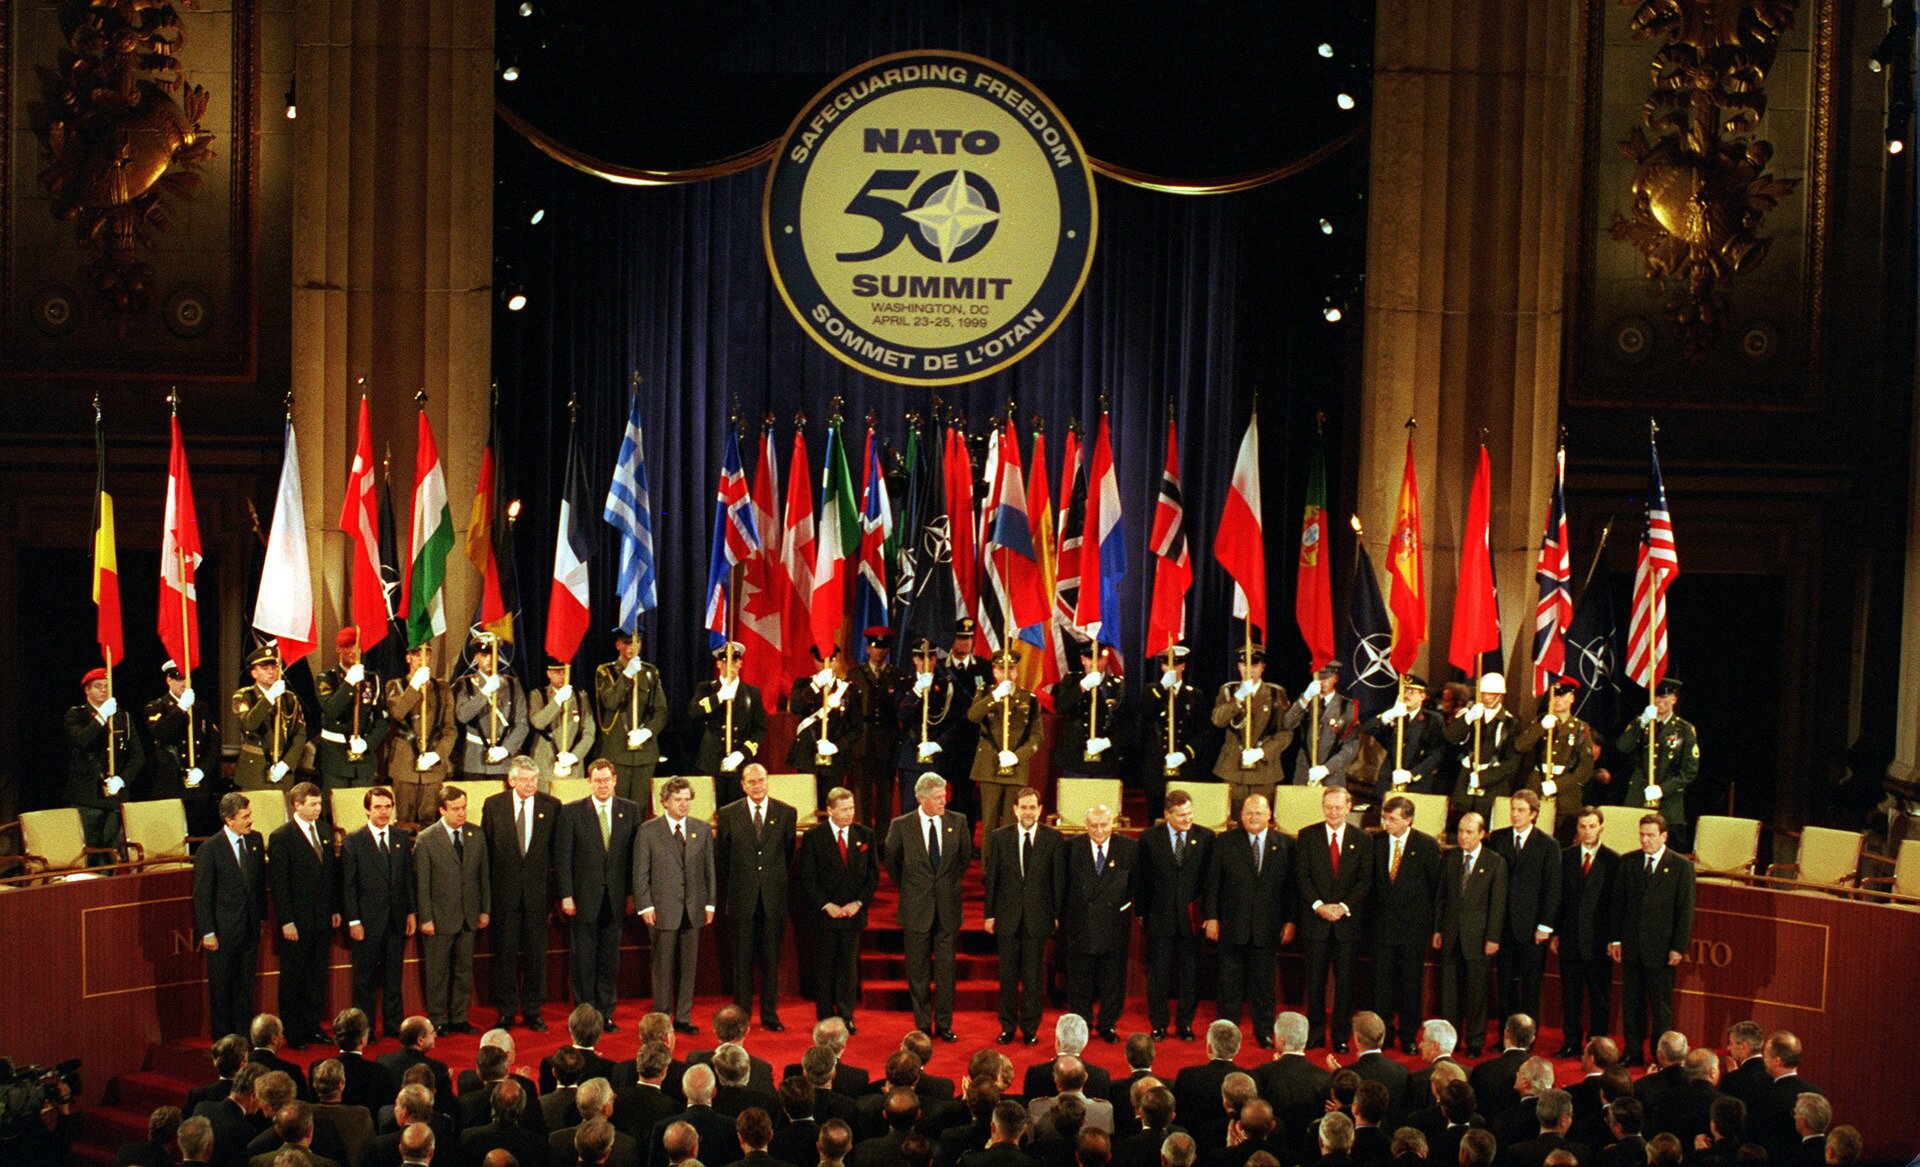 Fotografia barwna przedstawiająca Szczyt NATO w Waszyngtonie (1999). Z przodu ustawieni politycy a za nimi żołnierze trzymający flagi państw, z których pochodzą.